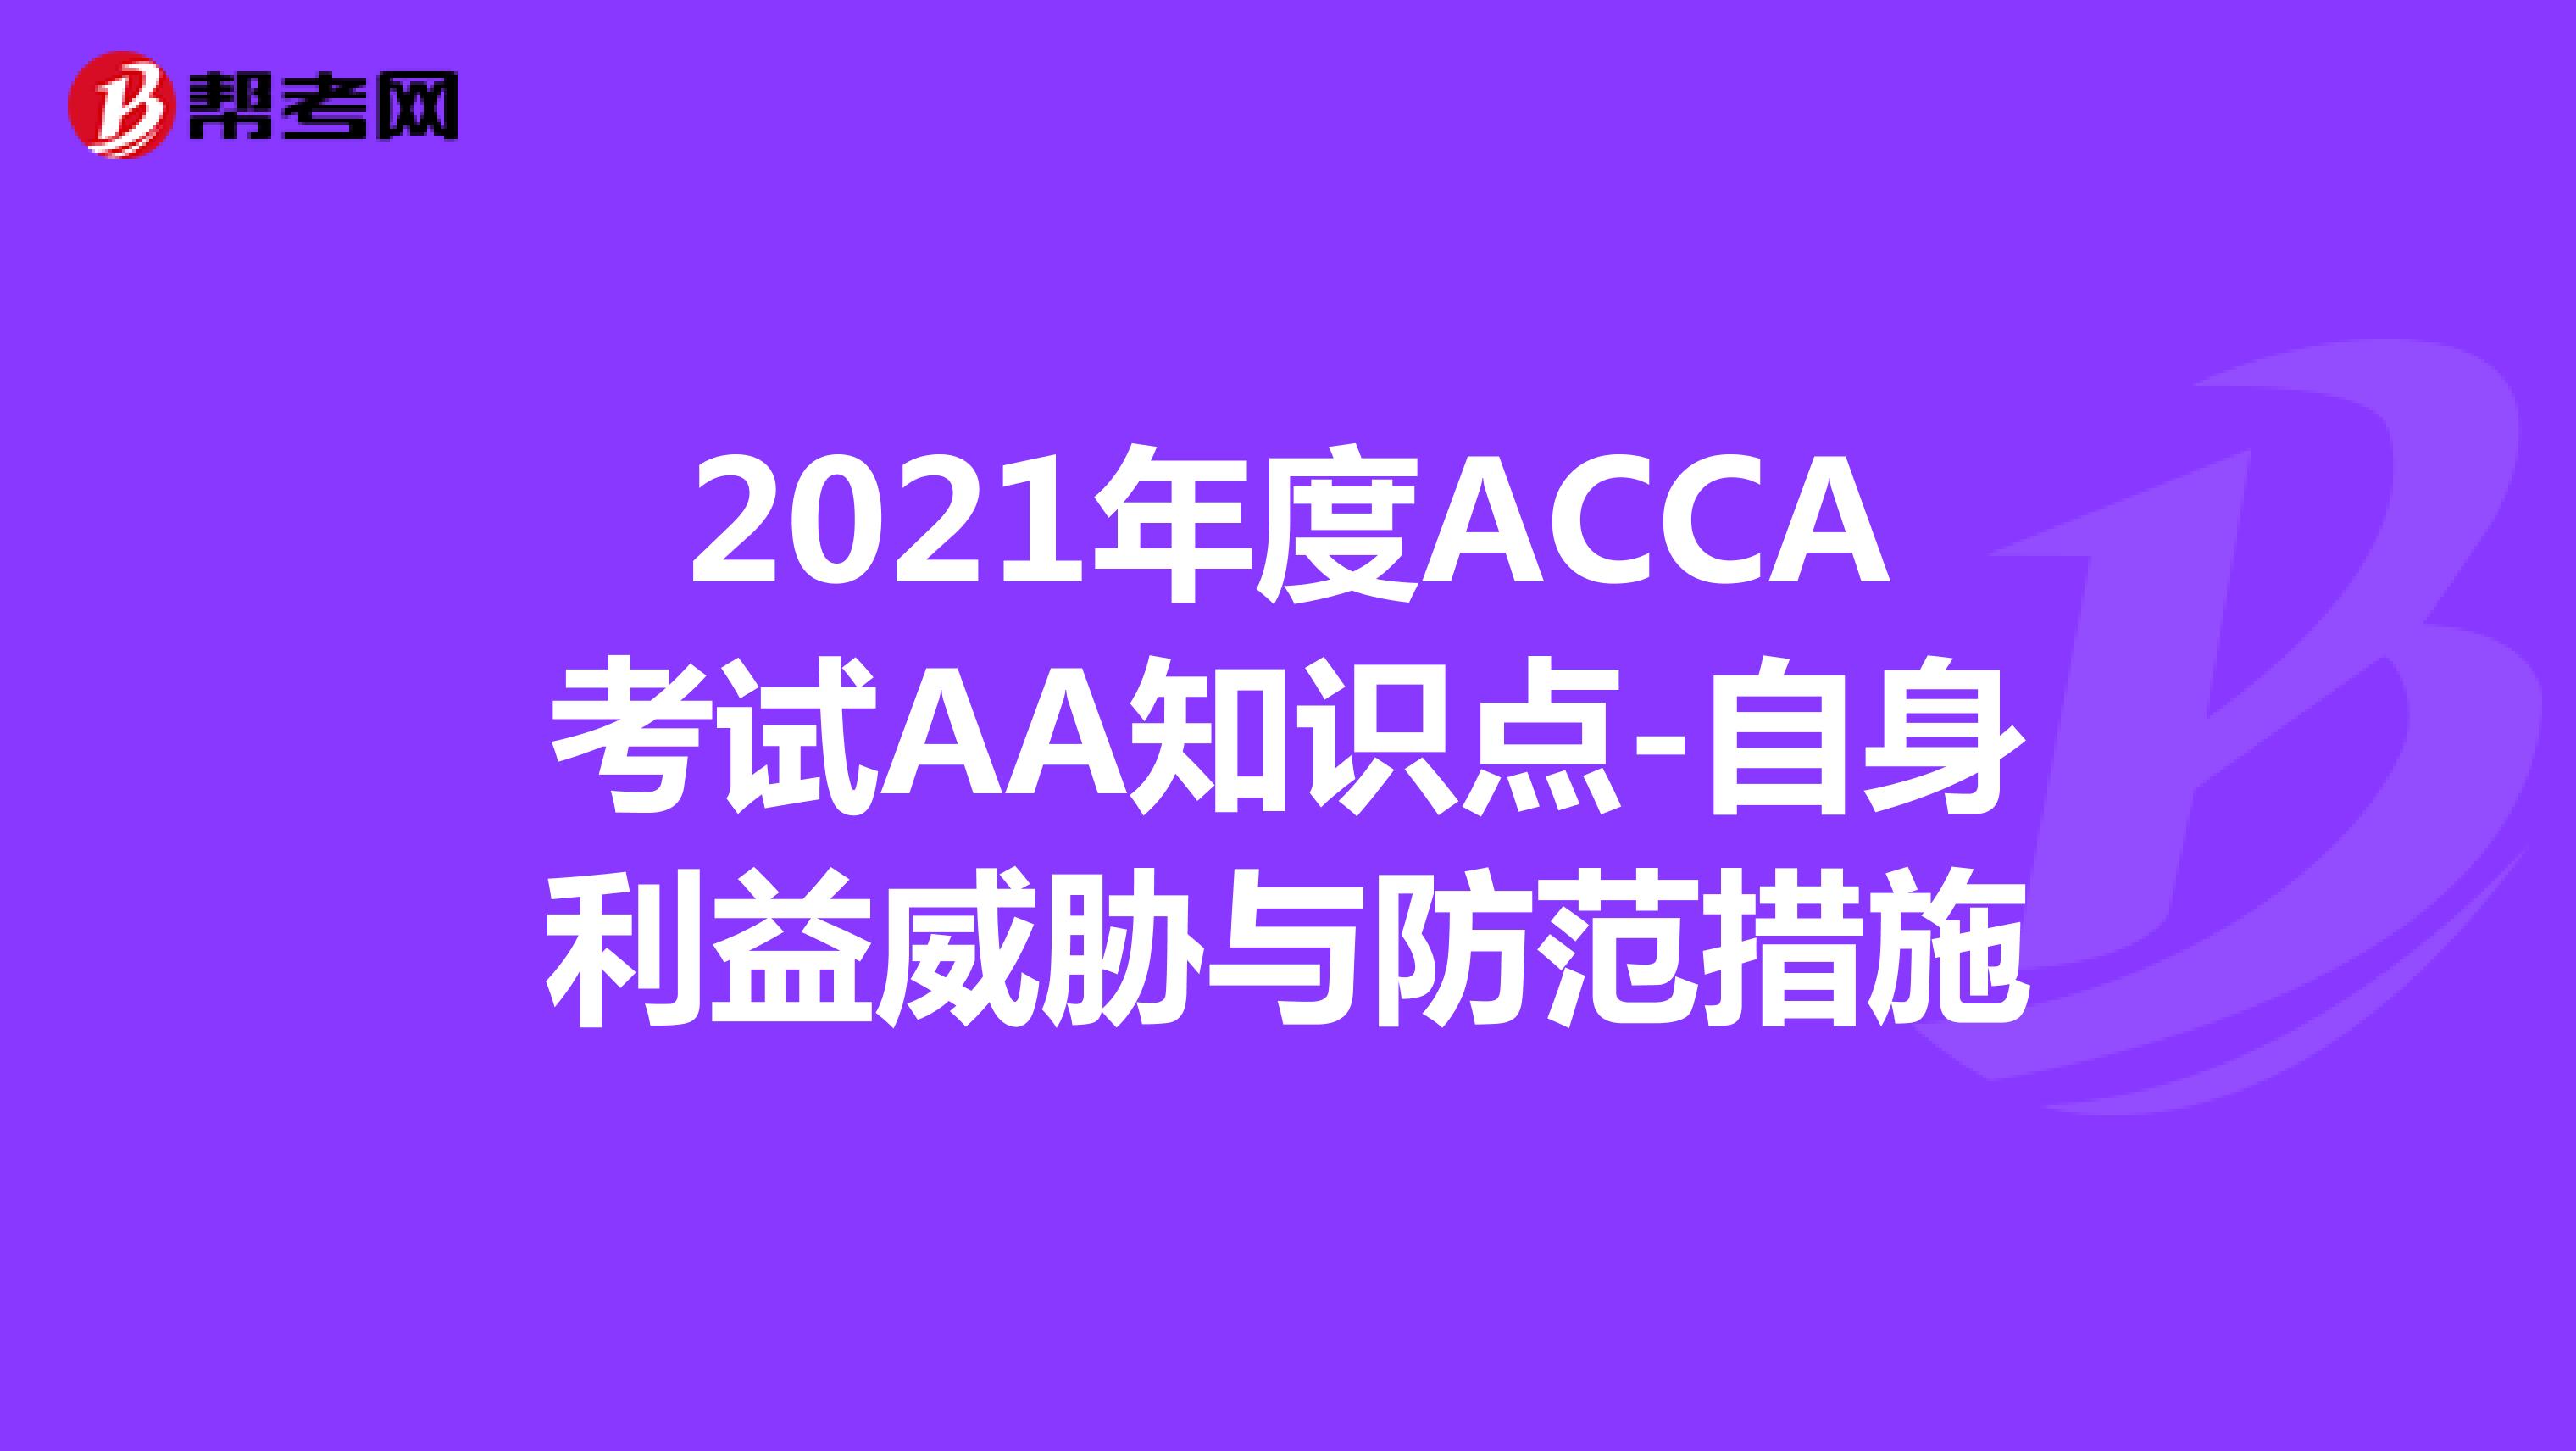 2021年度ACCA考试AA知识点-自身利益威胁与防范措施